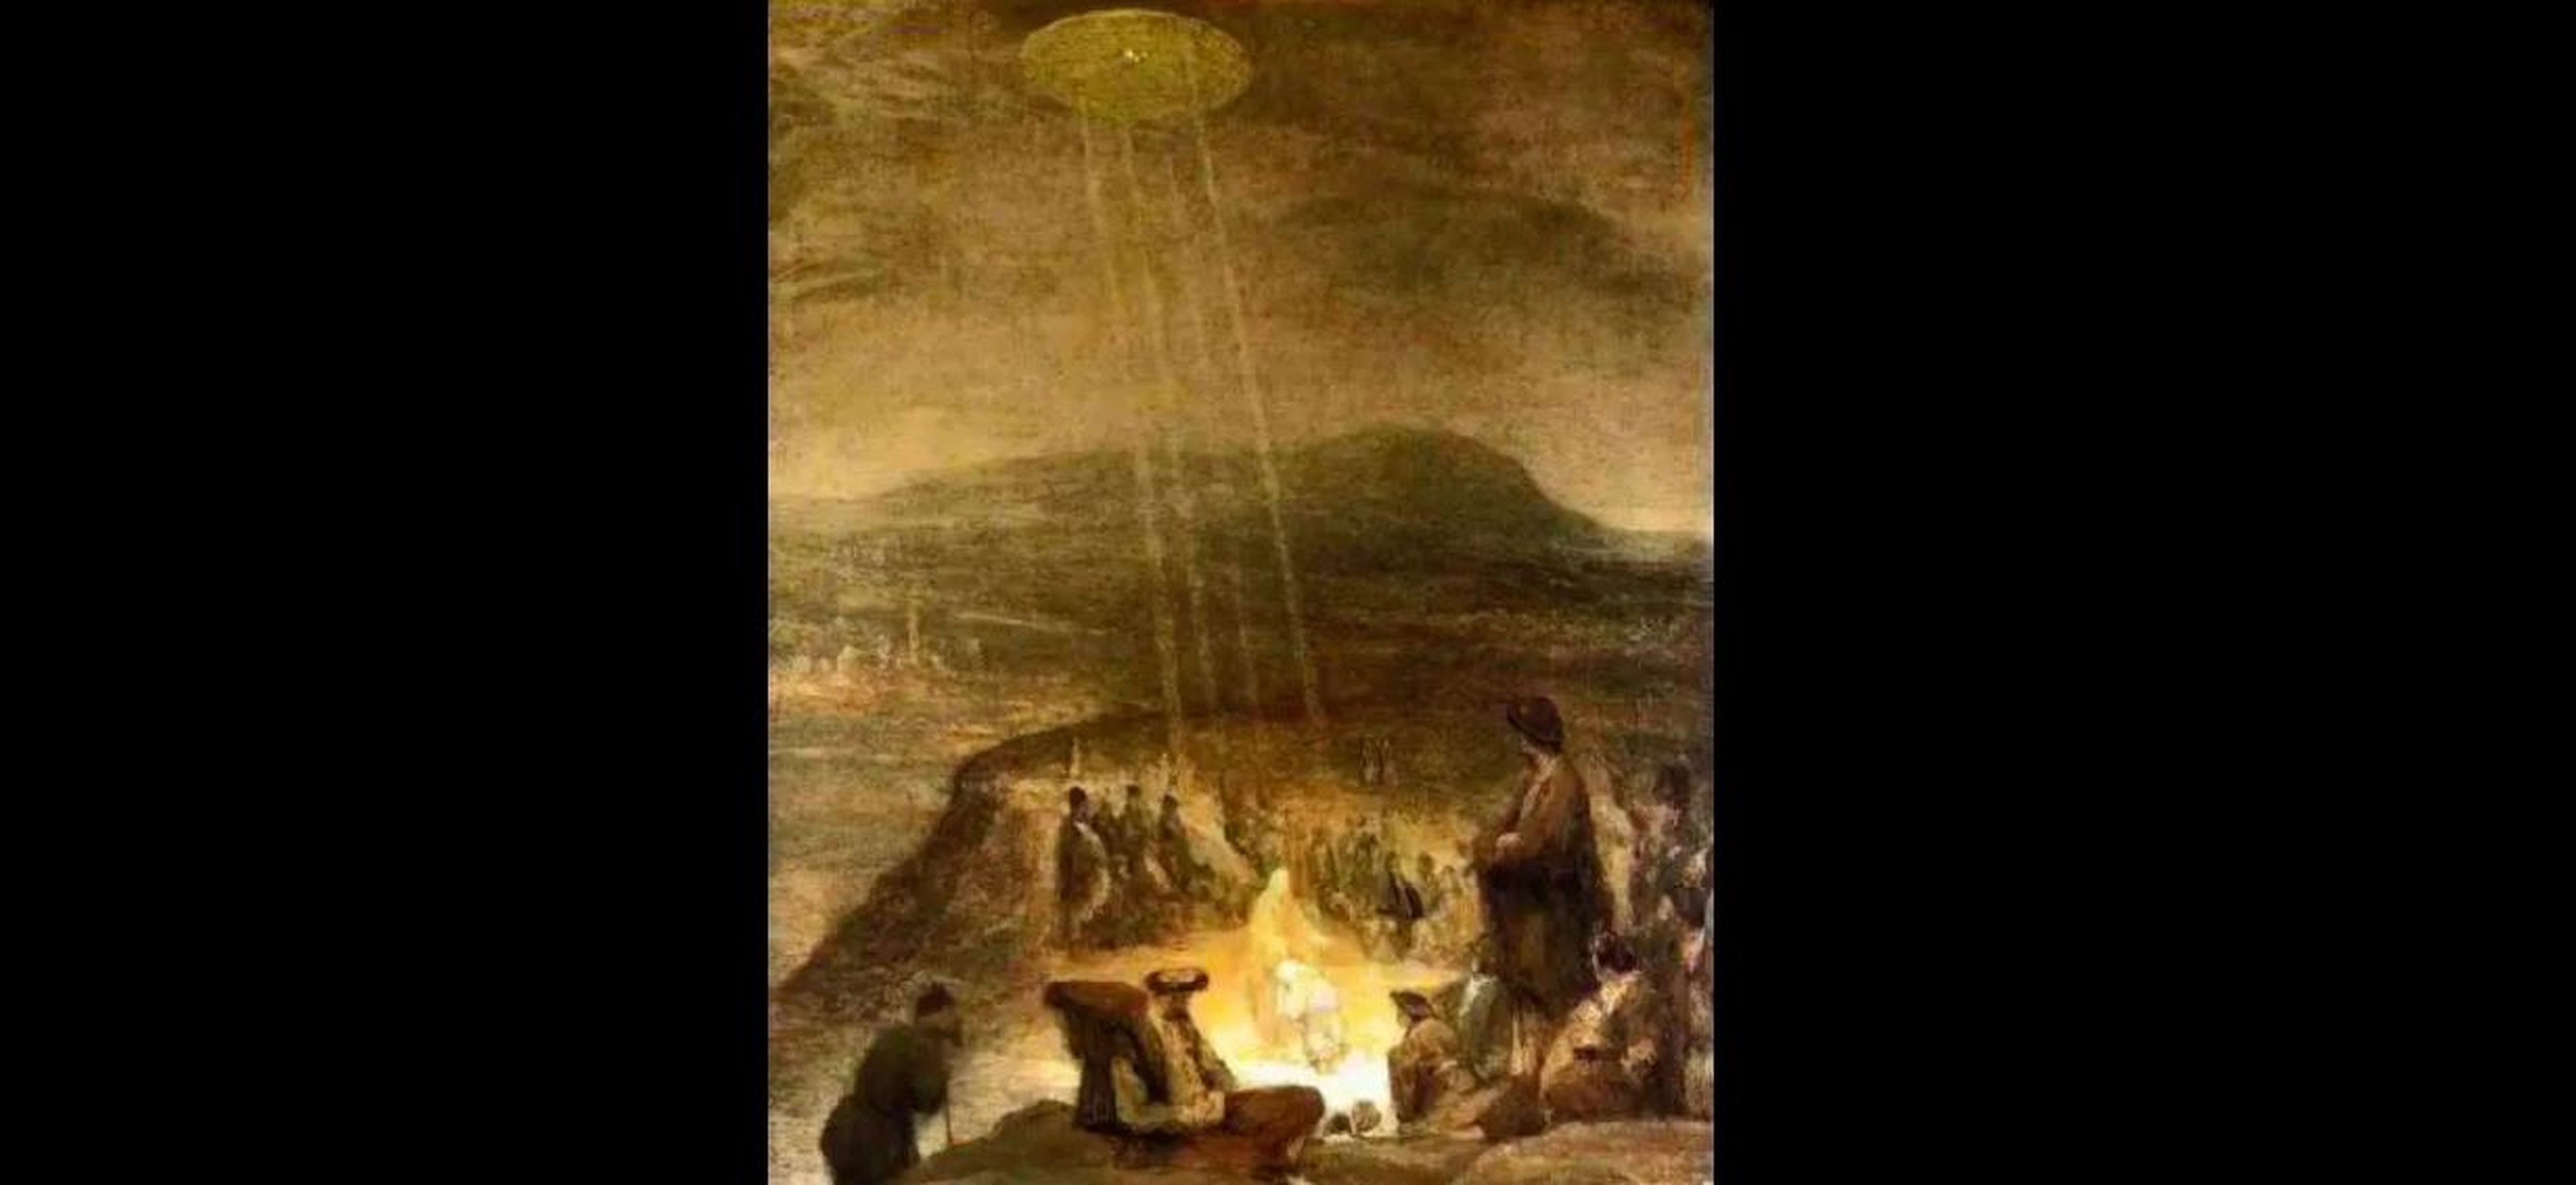 Esta representación del bautismo de Cristo podría tener un OVNI, según se mire